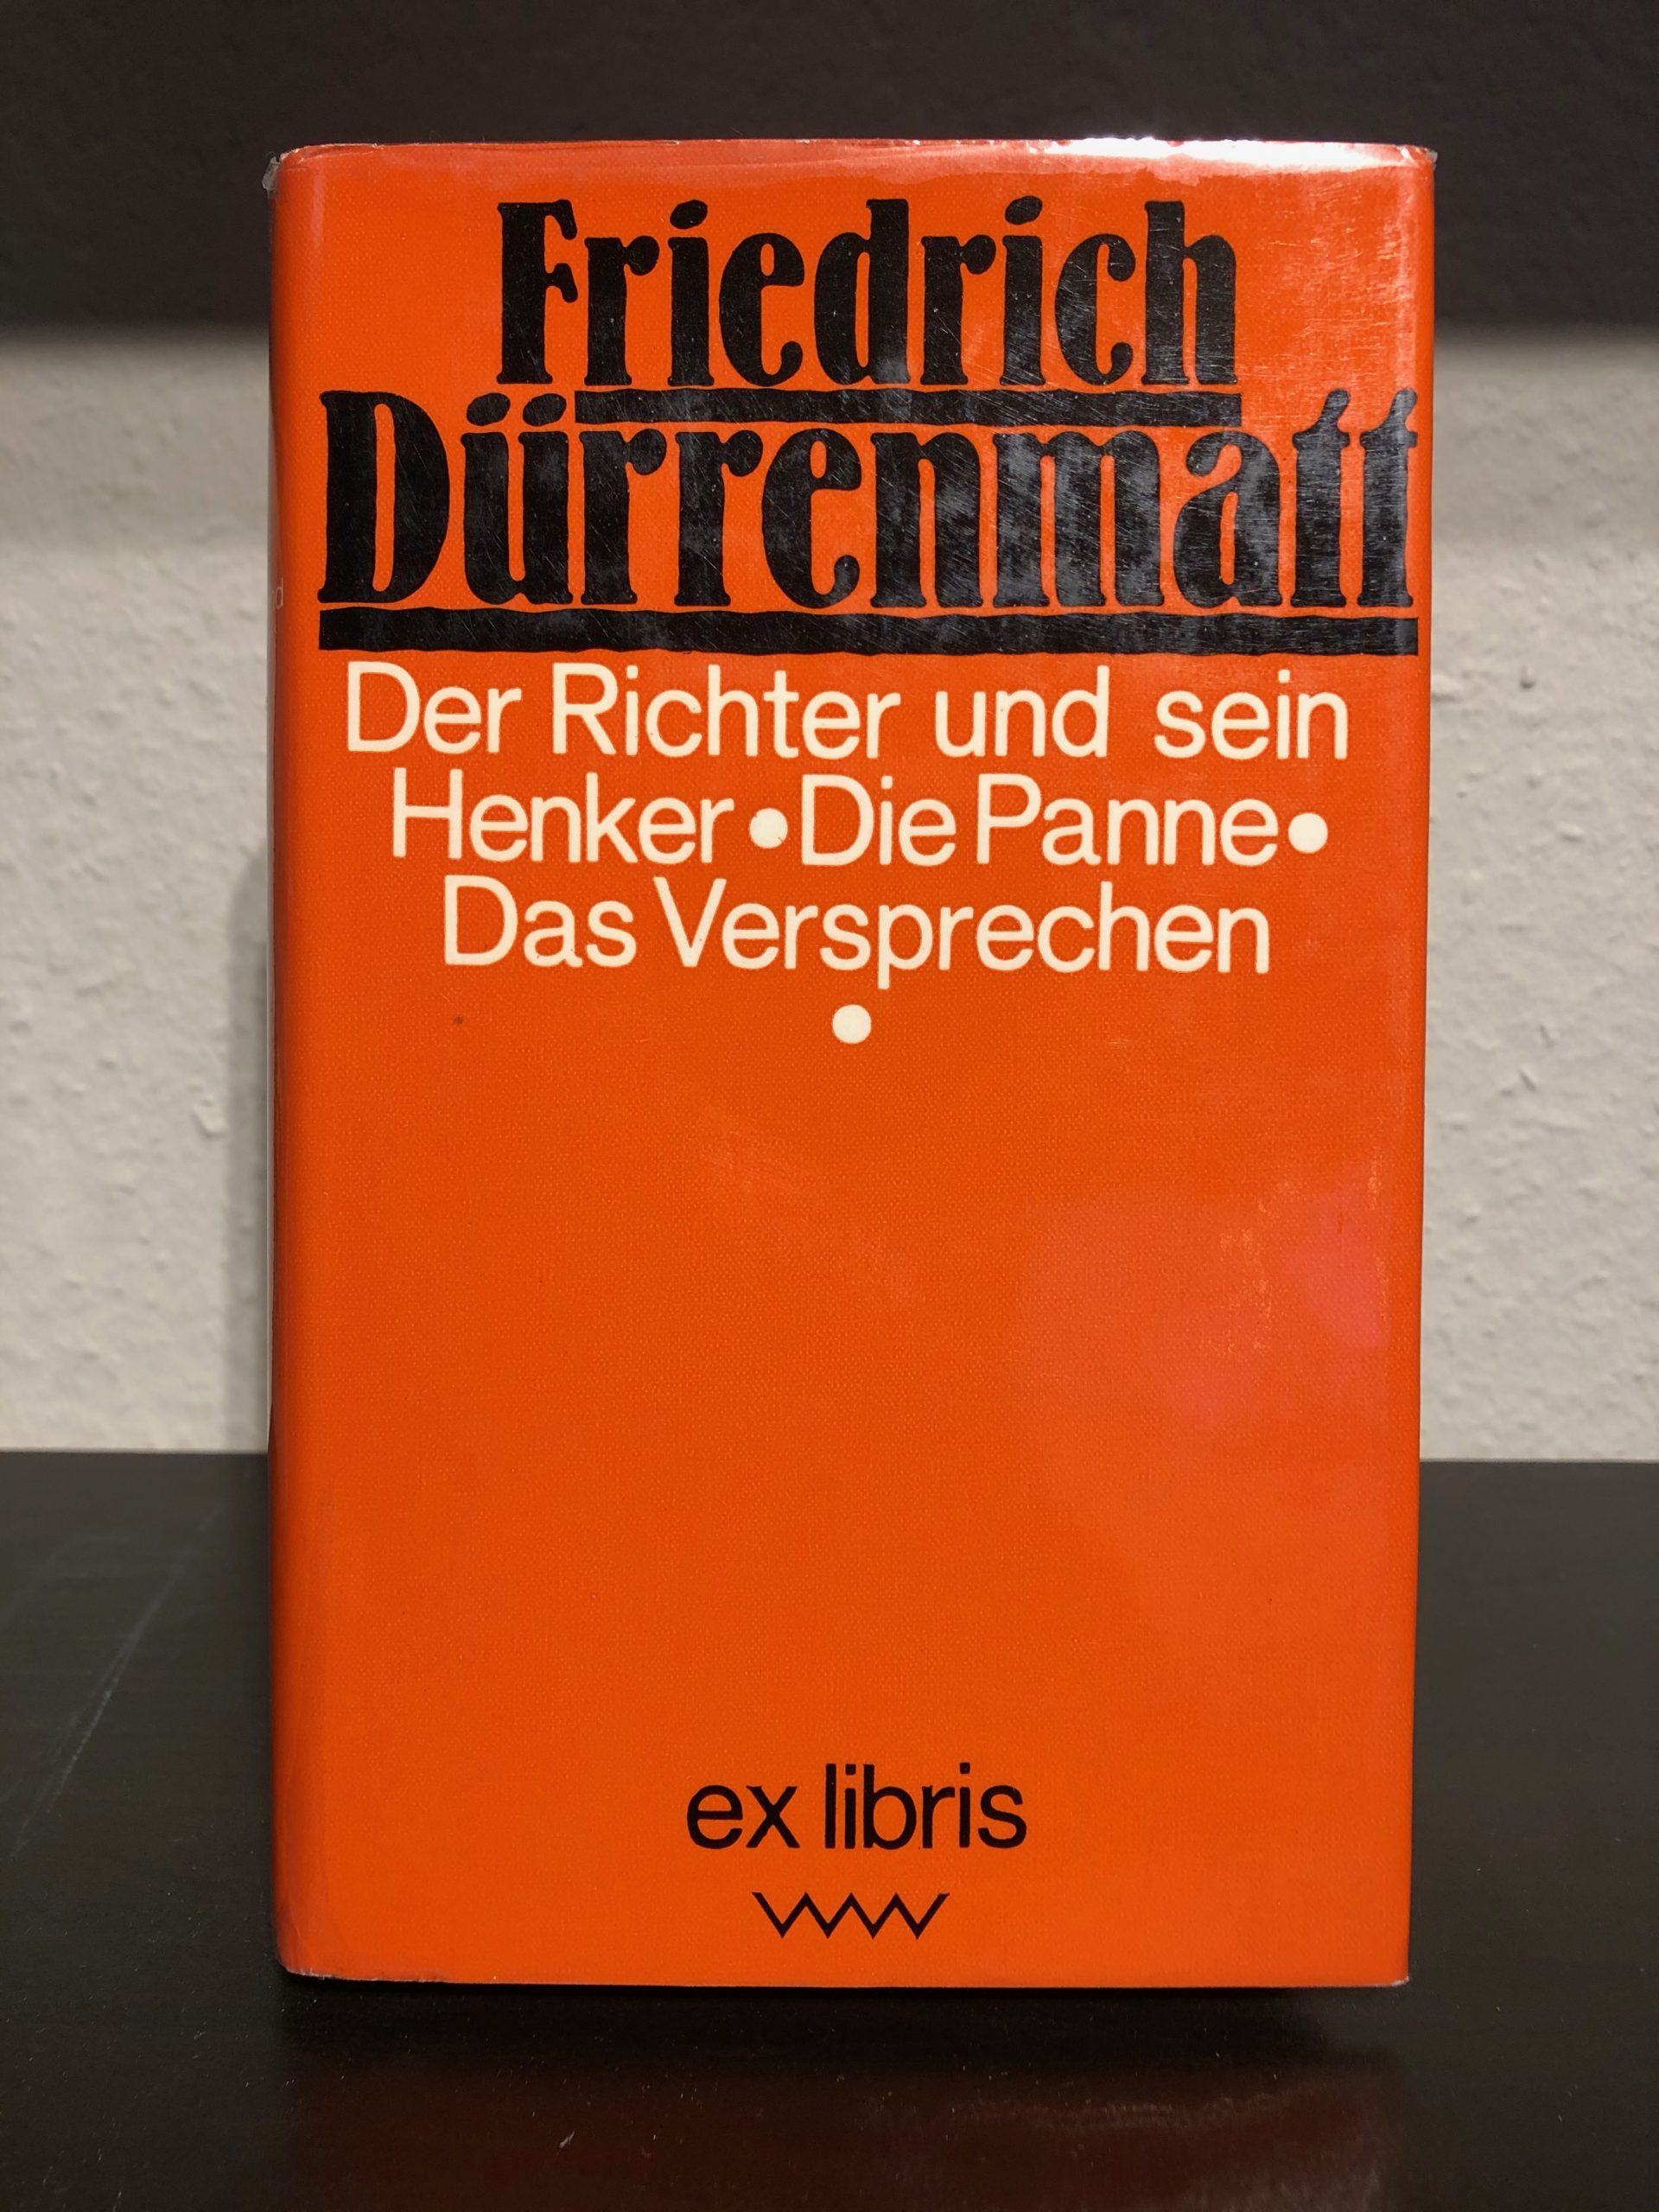 Der Richter und sein Henker - Friedrich Dürrenmatt-image